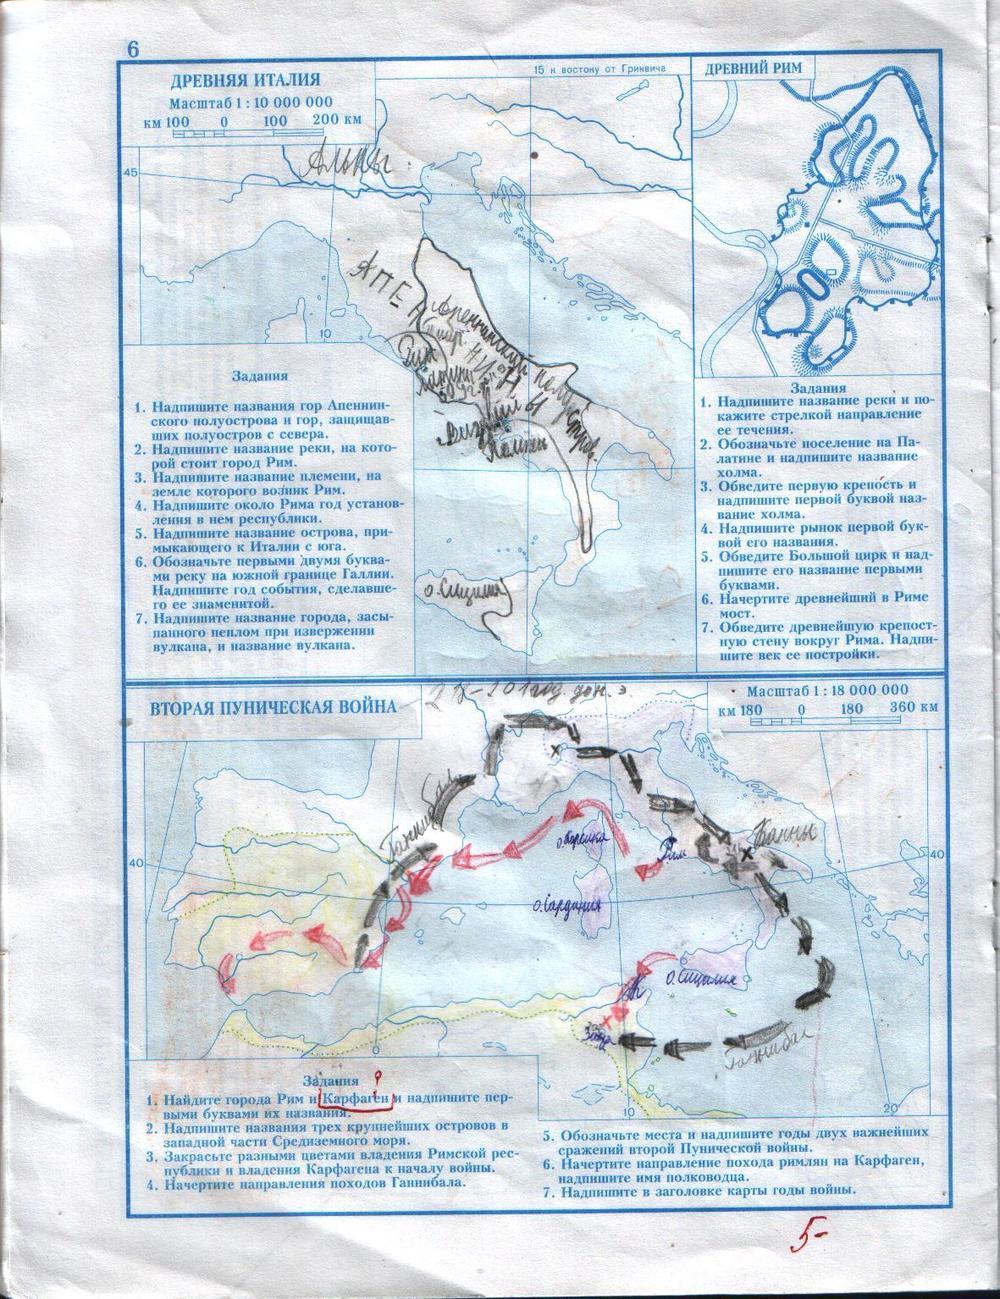 Контурная карта 5 класс горы скандинавские